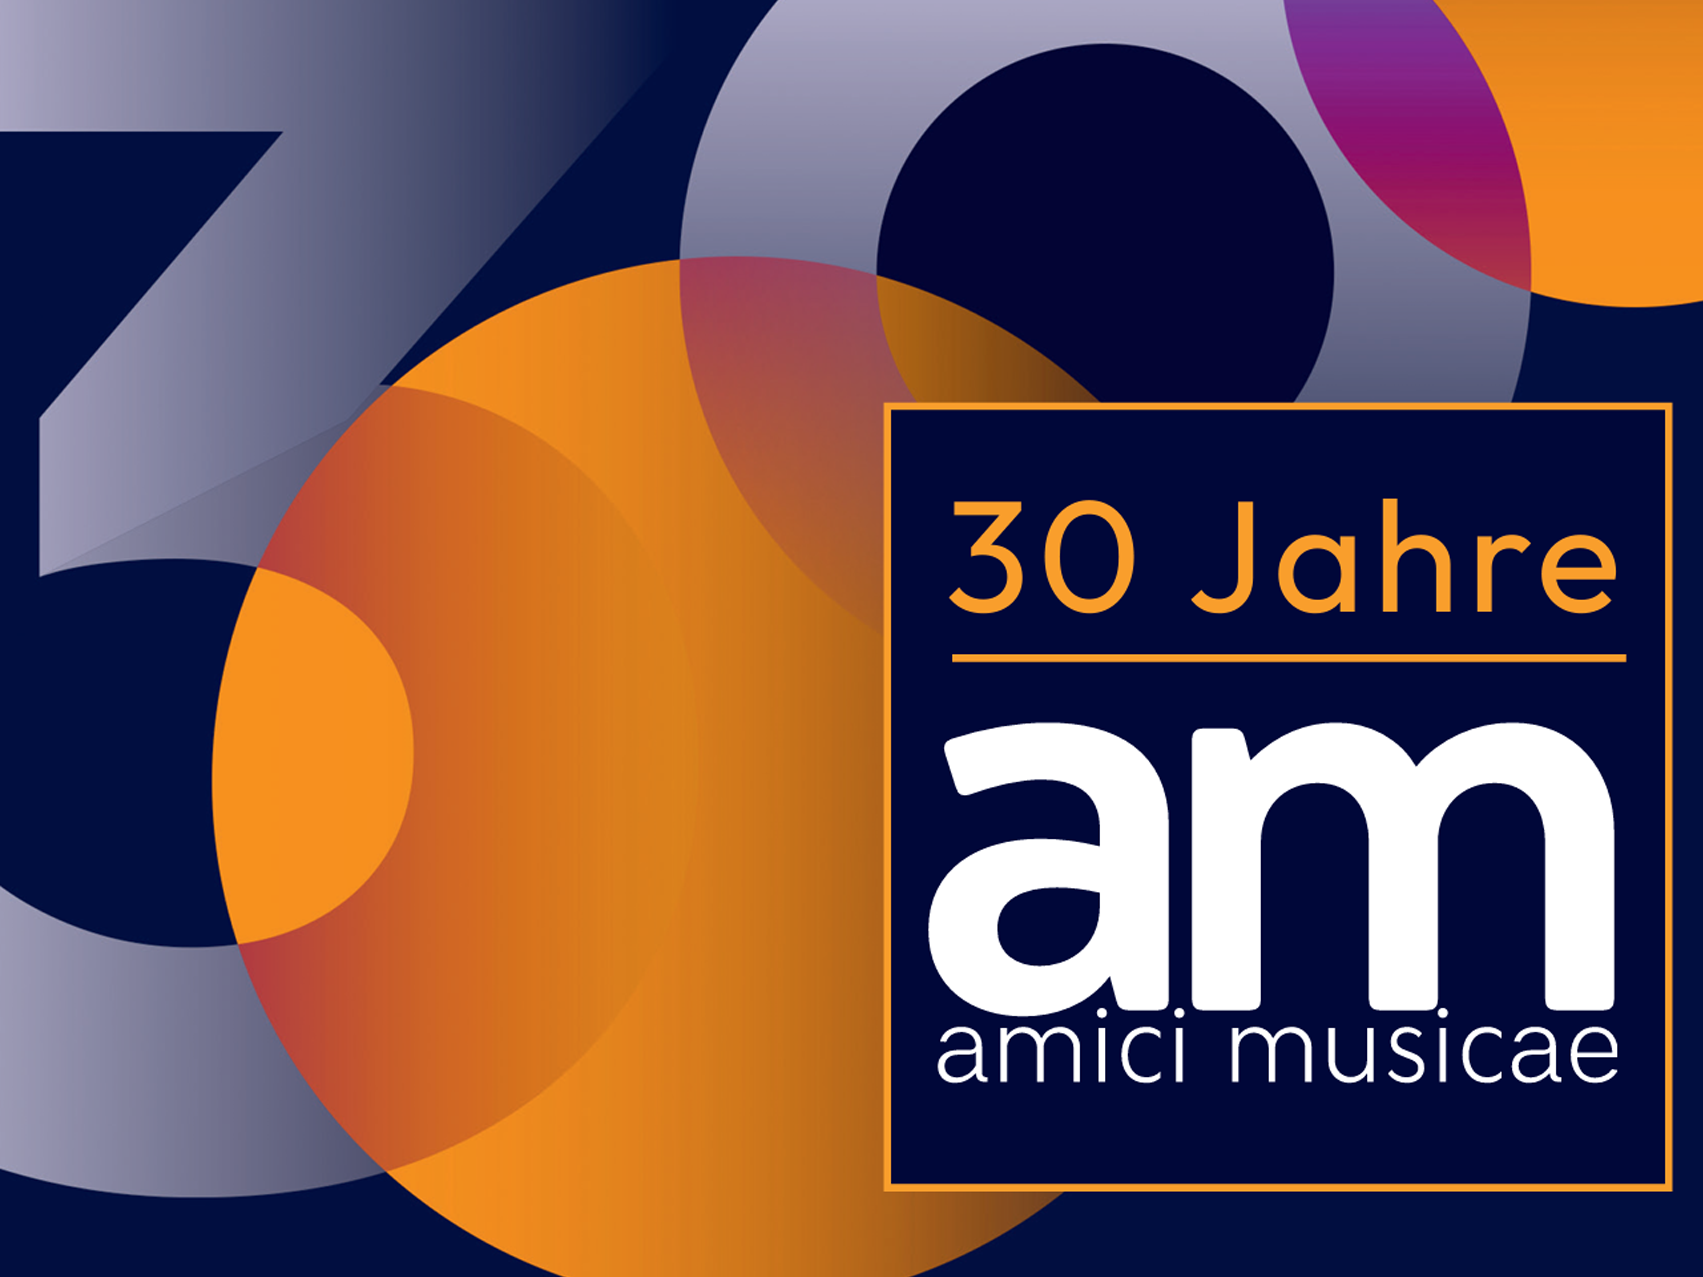 Jubiläum: 30 Jahre amici musicae